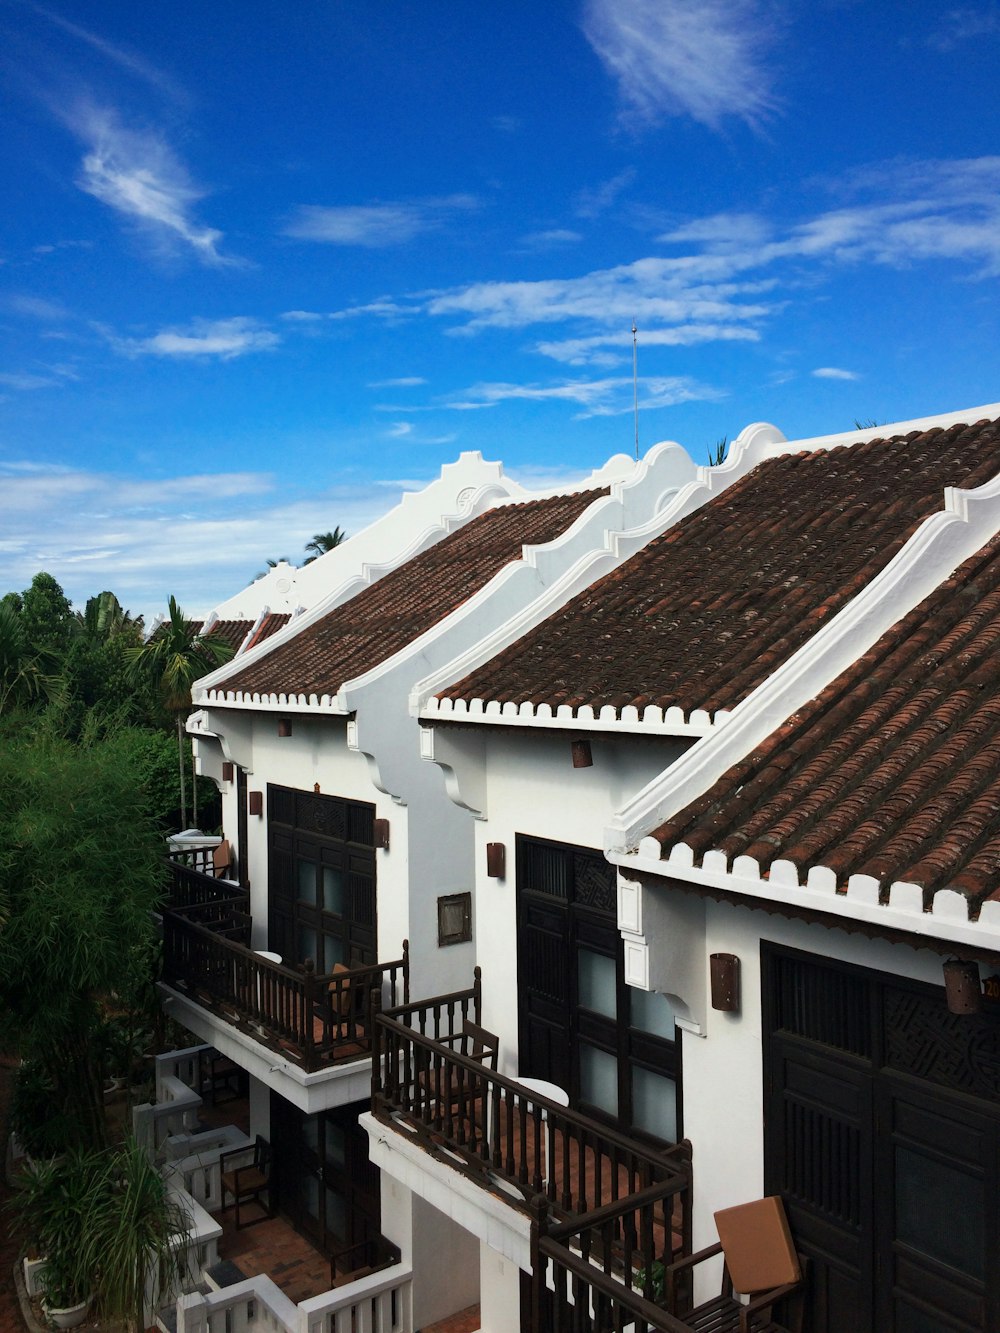 차분한 푸른 하늘 아래 흰색과 갈색 콘크리트 집